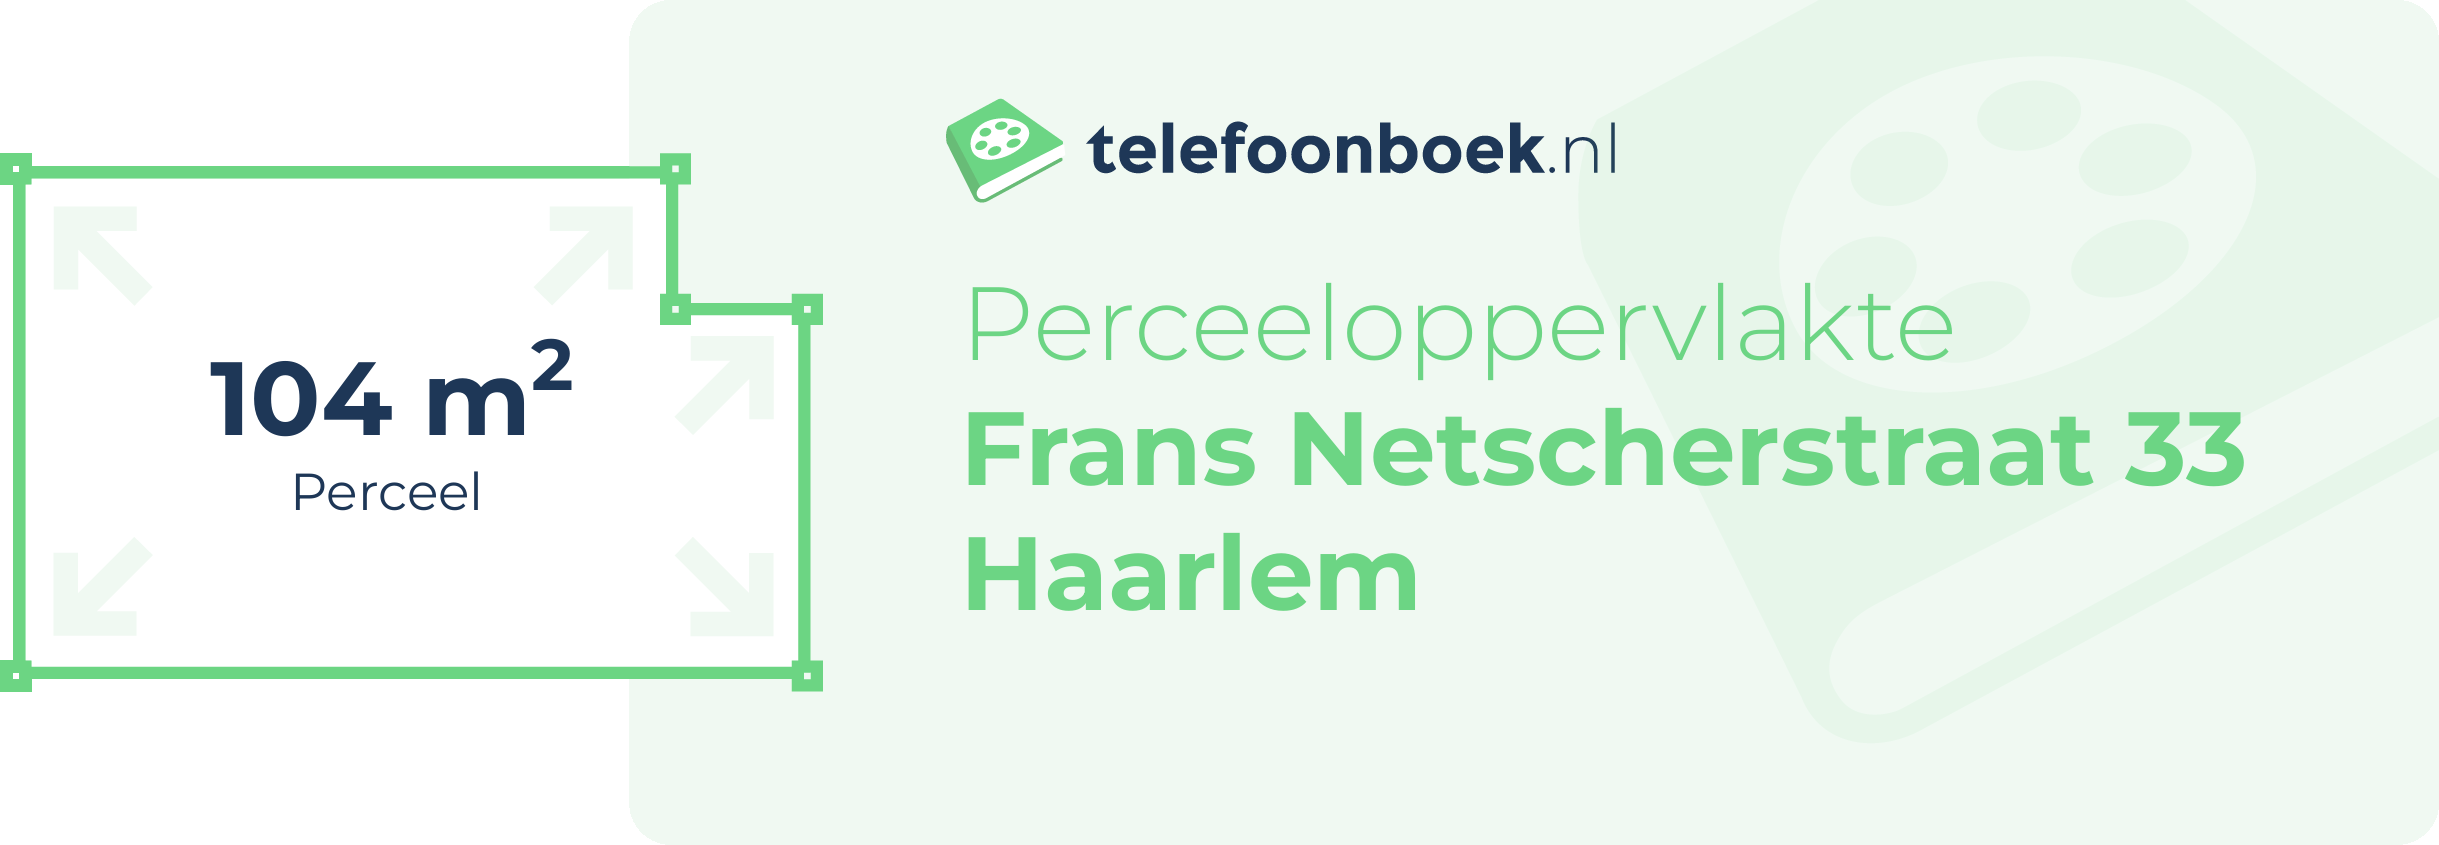 Perceeloppervlakte Frans Netscherstraat 33 Haarlem